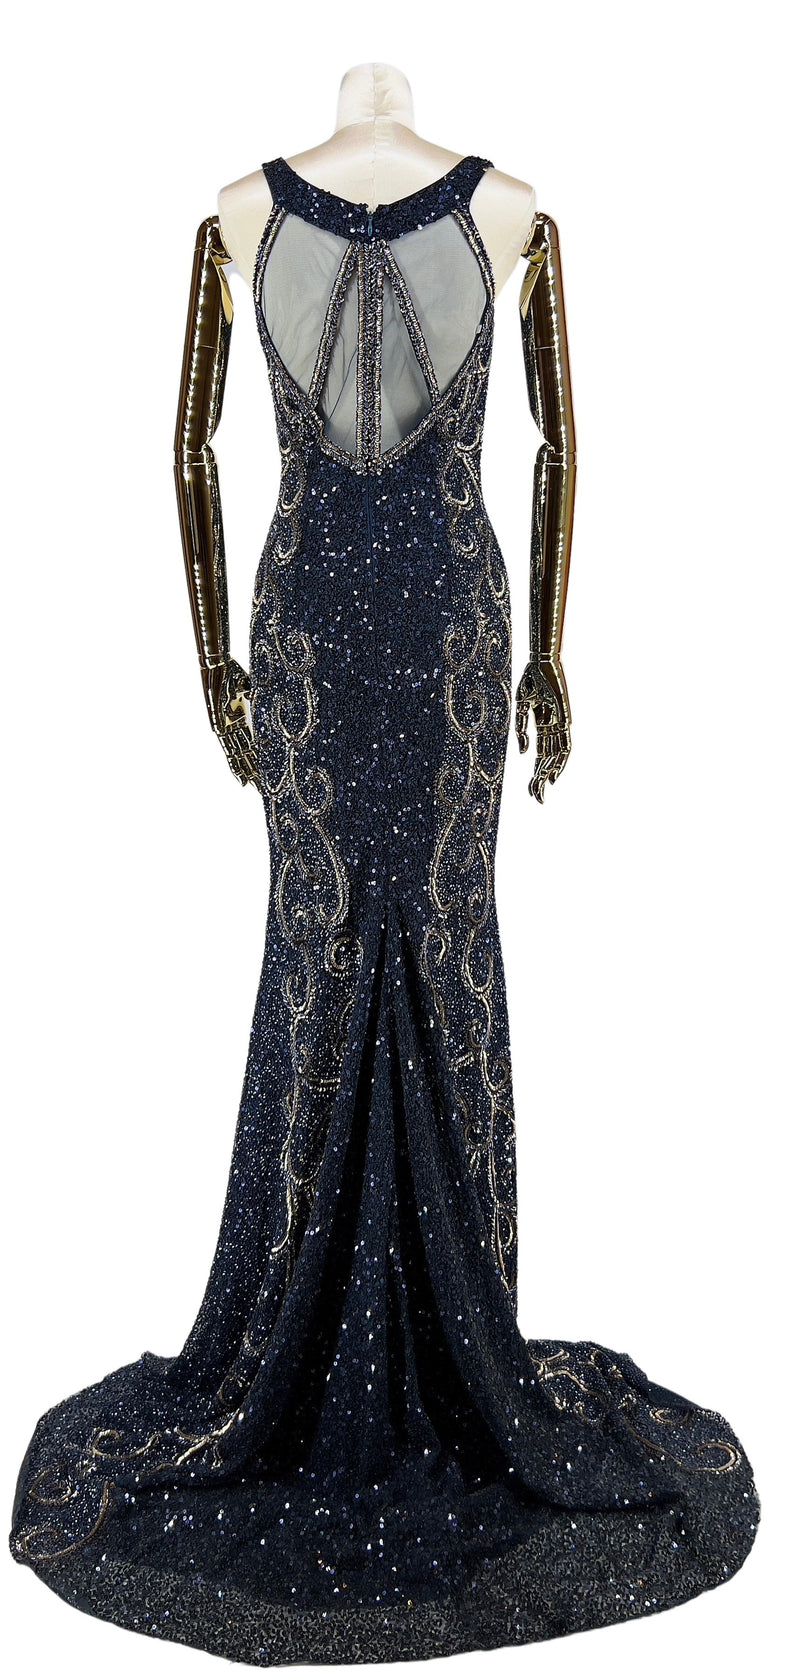 Bagfra visning af Midnatsblå Majestæt Gallakjole, afslører kjolens imponerende rygdesign med unikke detaljer, perfekt for en storslået entré.